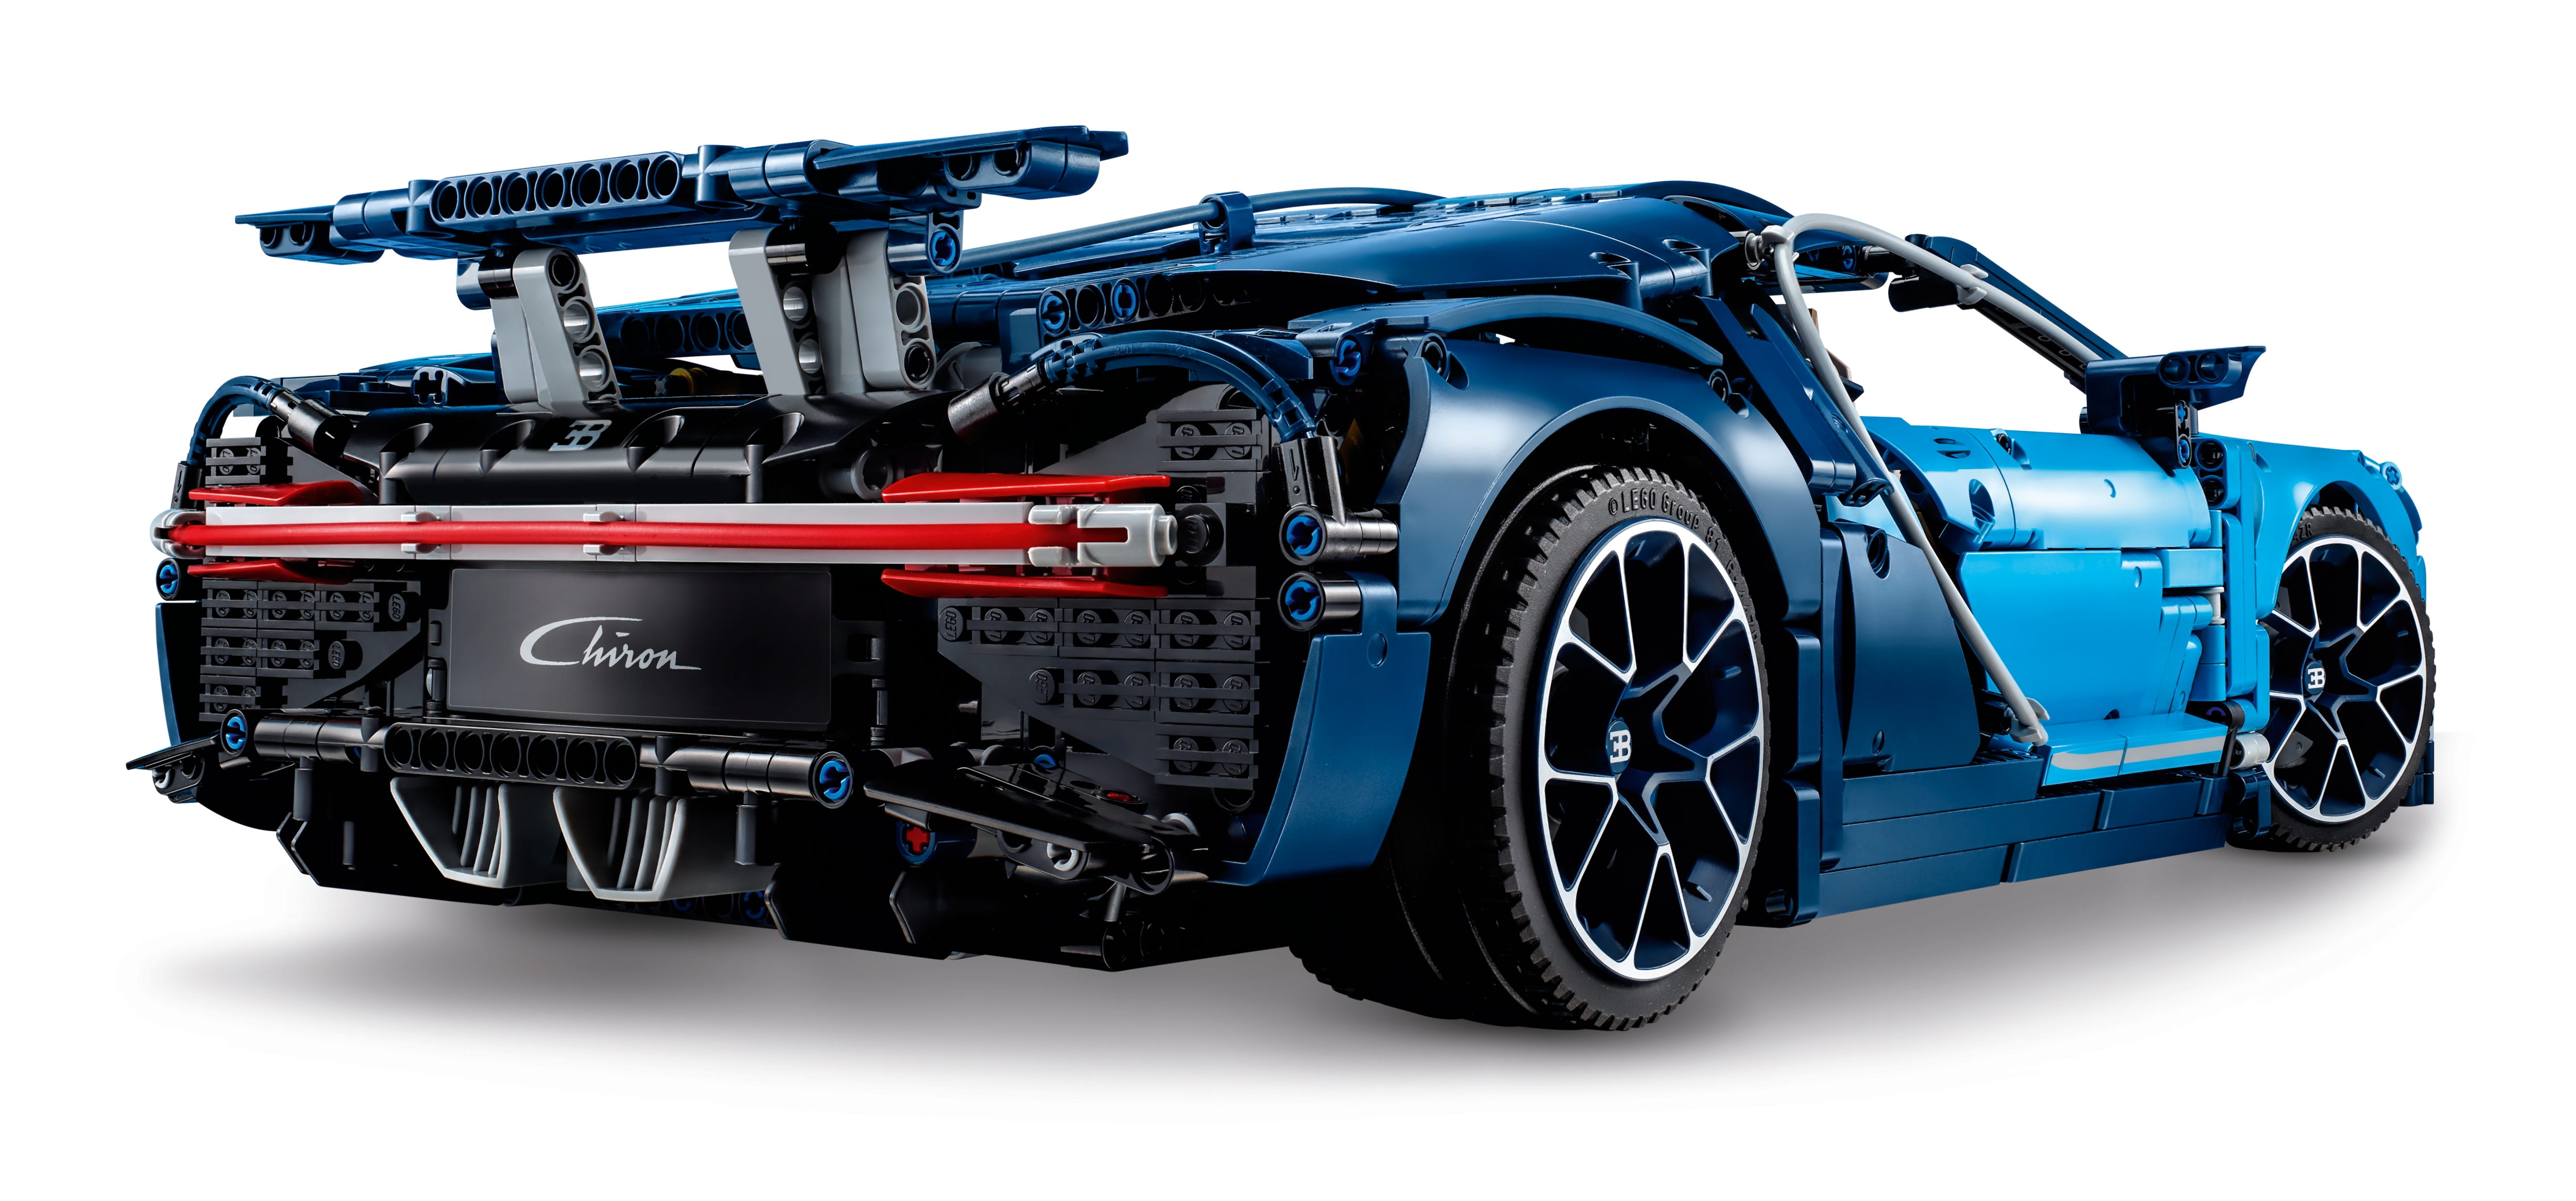 Lego Technic Bugatti Chiron 42083 Totalmente Nuevo Sellado Navidad